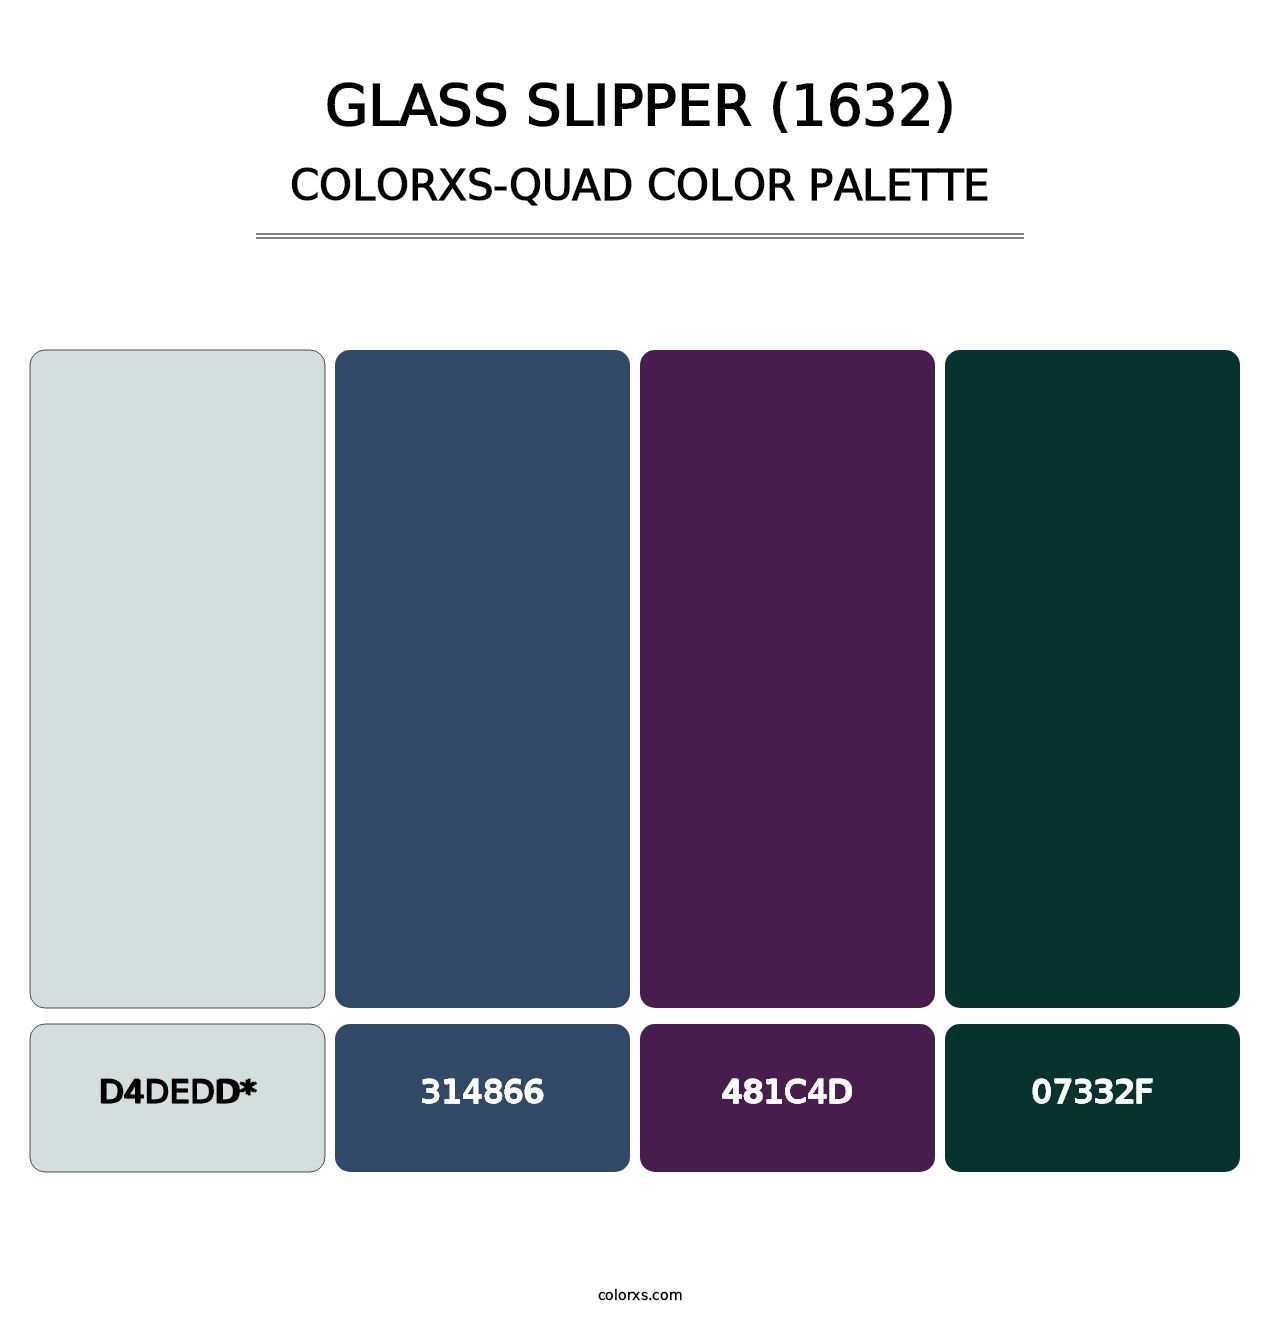 Glass Slipper (1632) - Colorxs Quad Palette